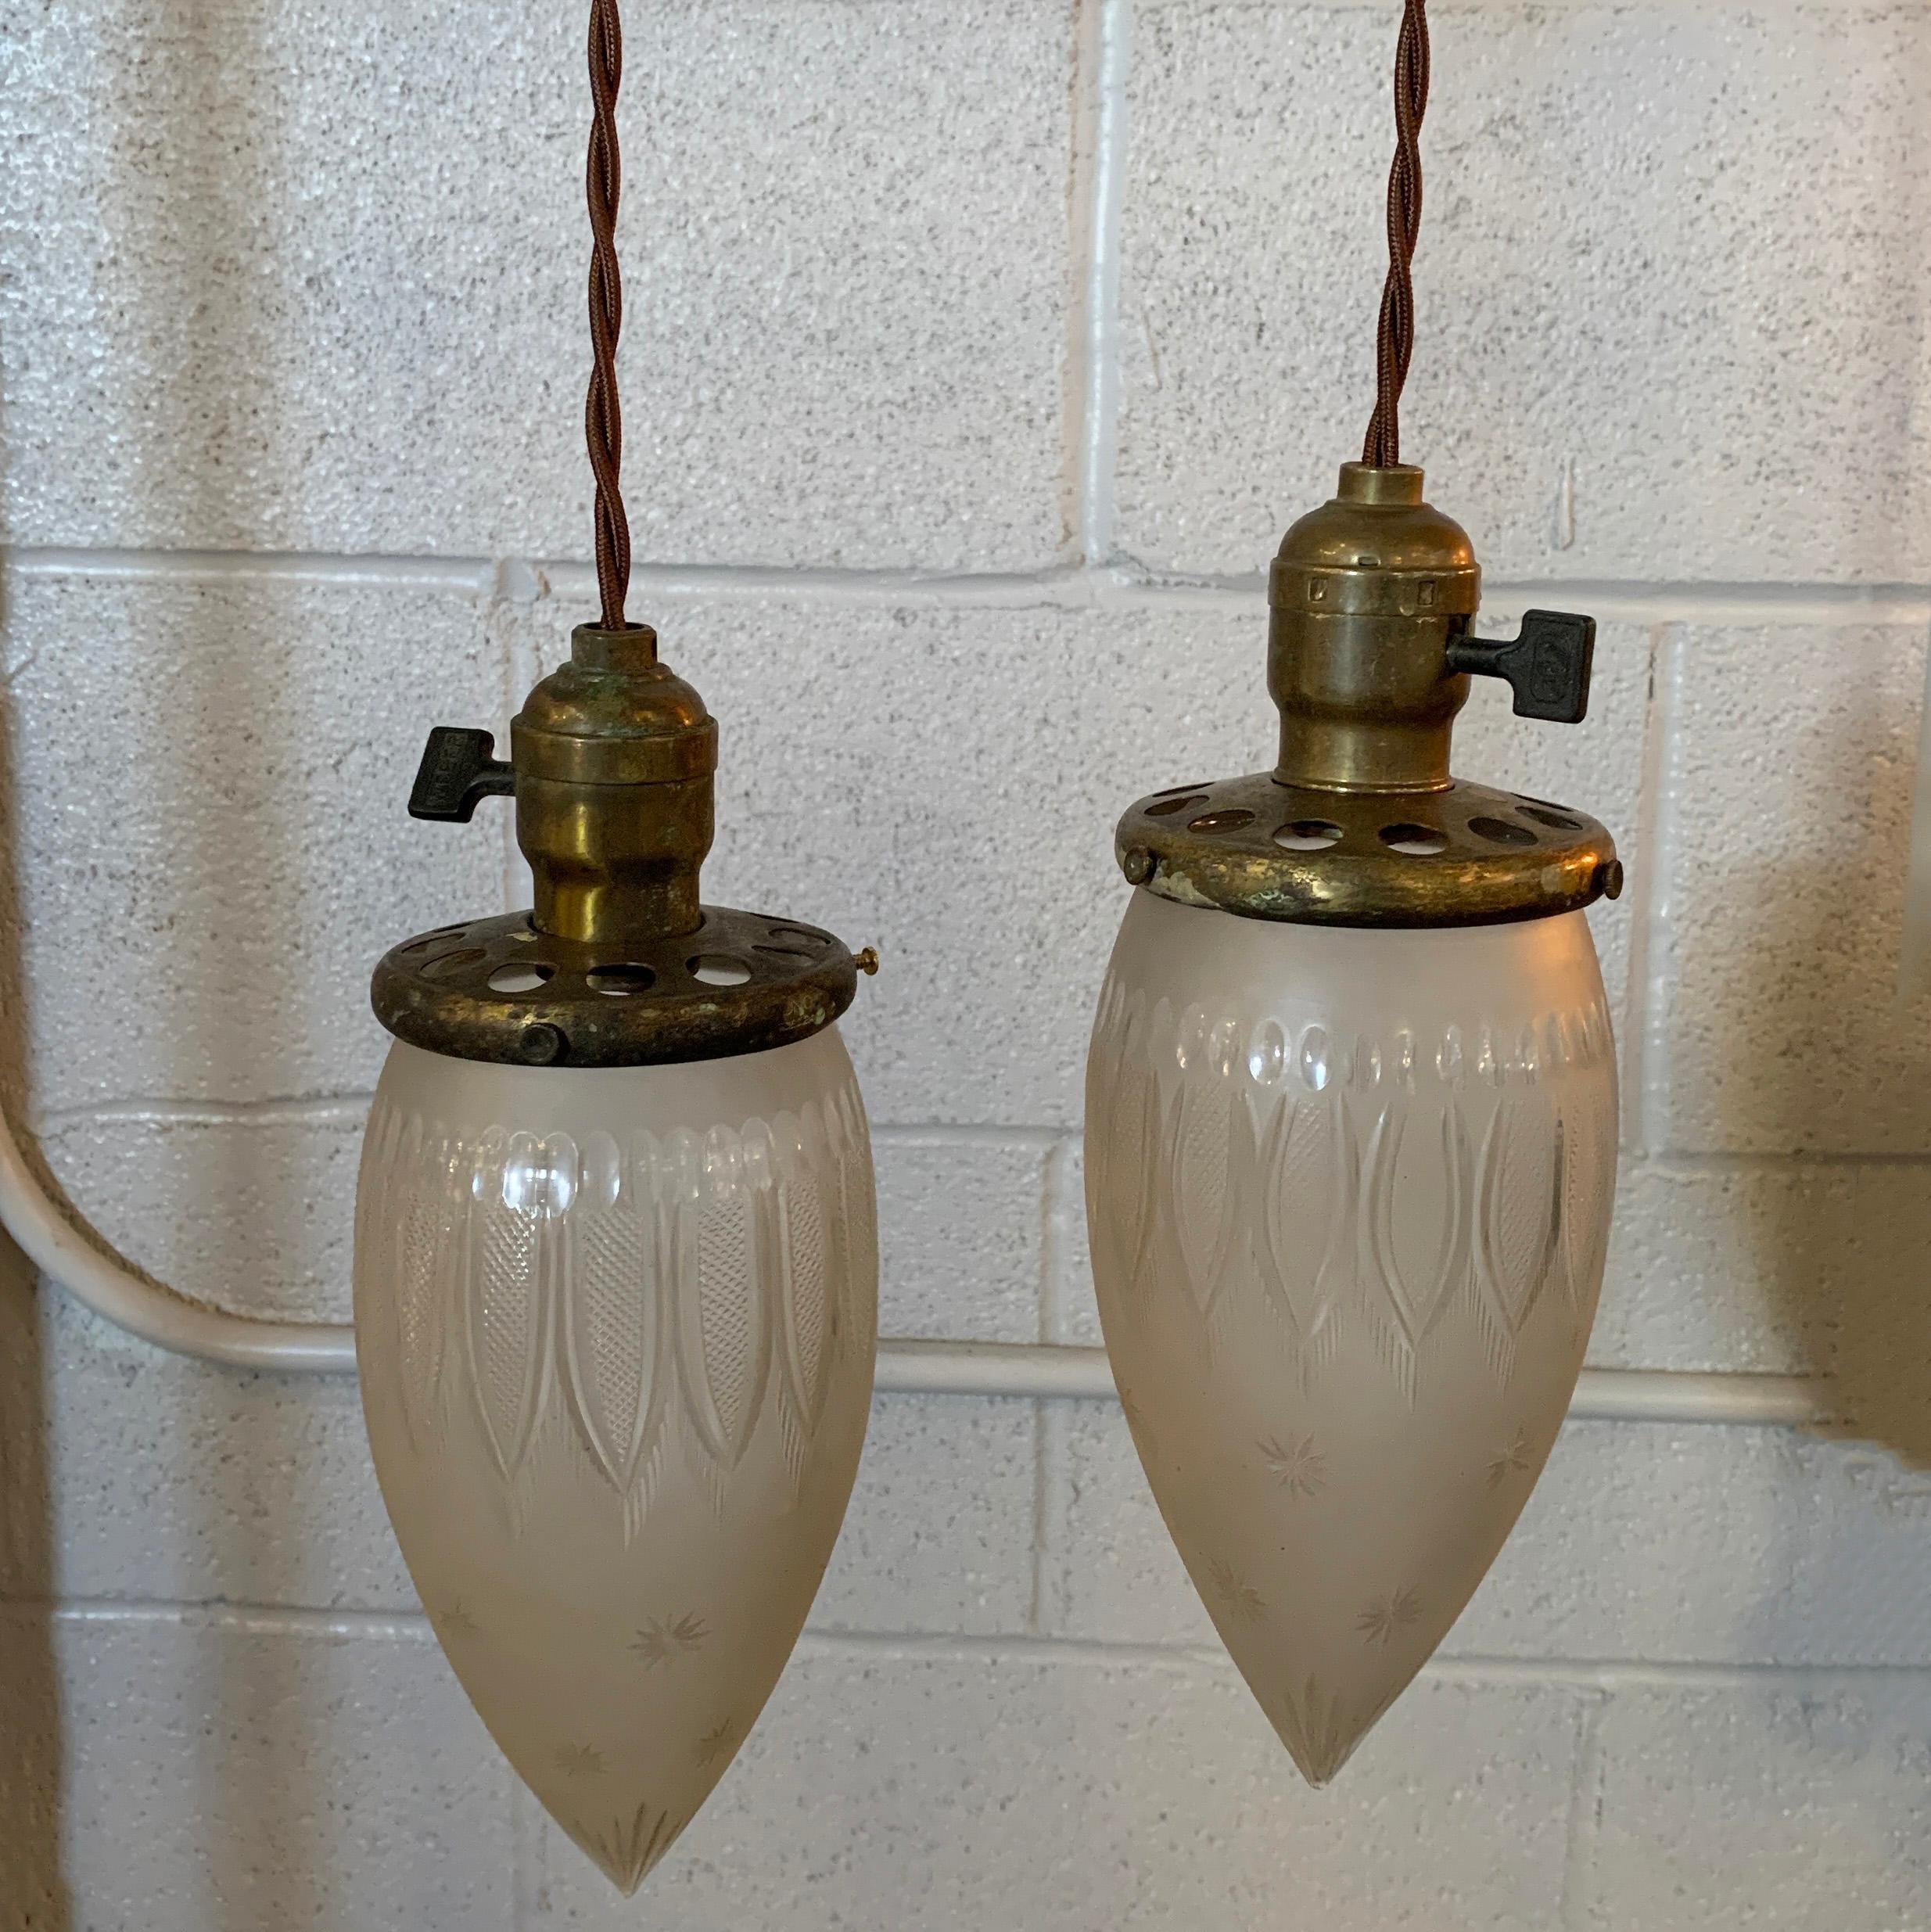 Antike industrielle Pendelleuchte mit einem tropfenförmigen Schirm aus geätztem Glas aus dem späten 19. Jahrhundert und einem Schalter aus Messing. Die Hängeleuchte ist mit einer 40 cm langen geflochtenen Stoffschnur für eine 75-Watt-Glühbirne